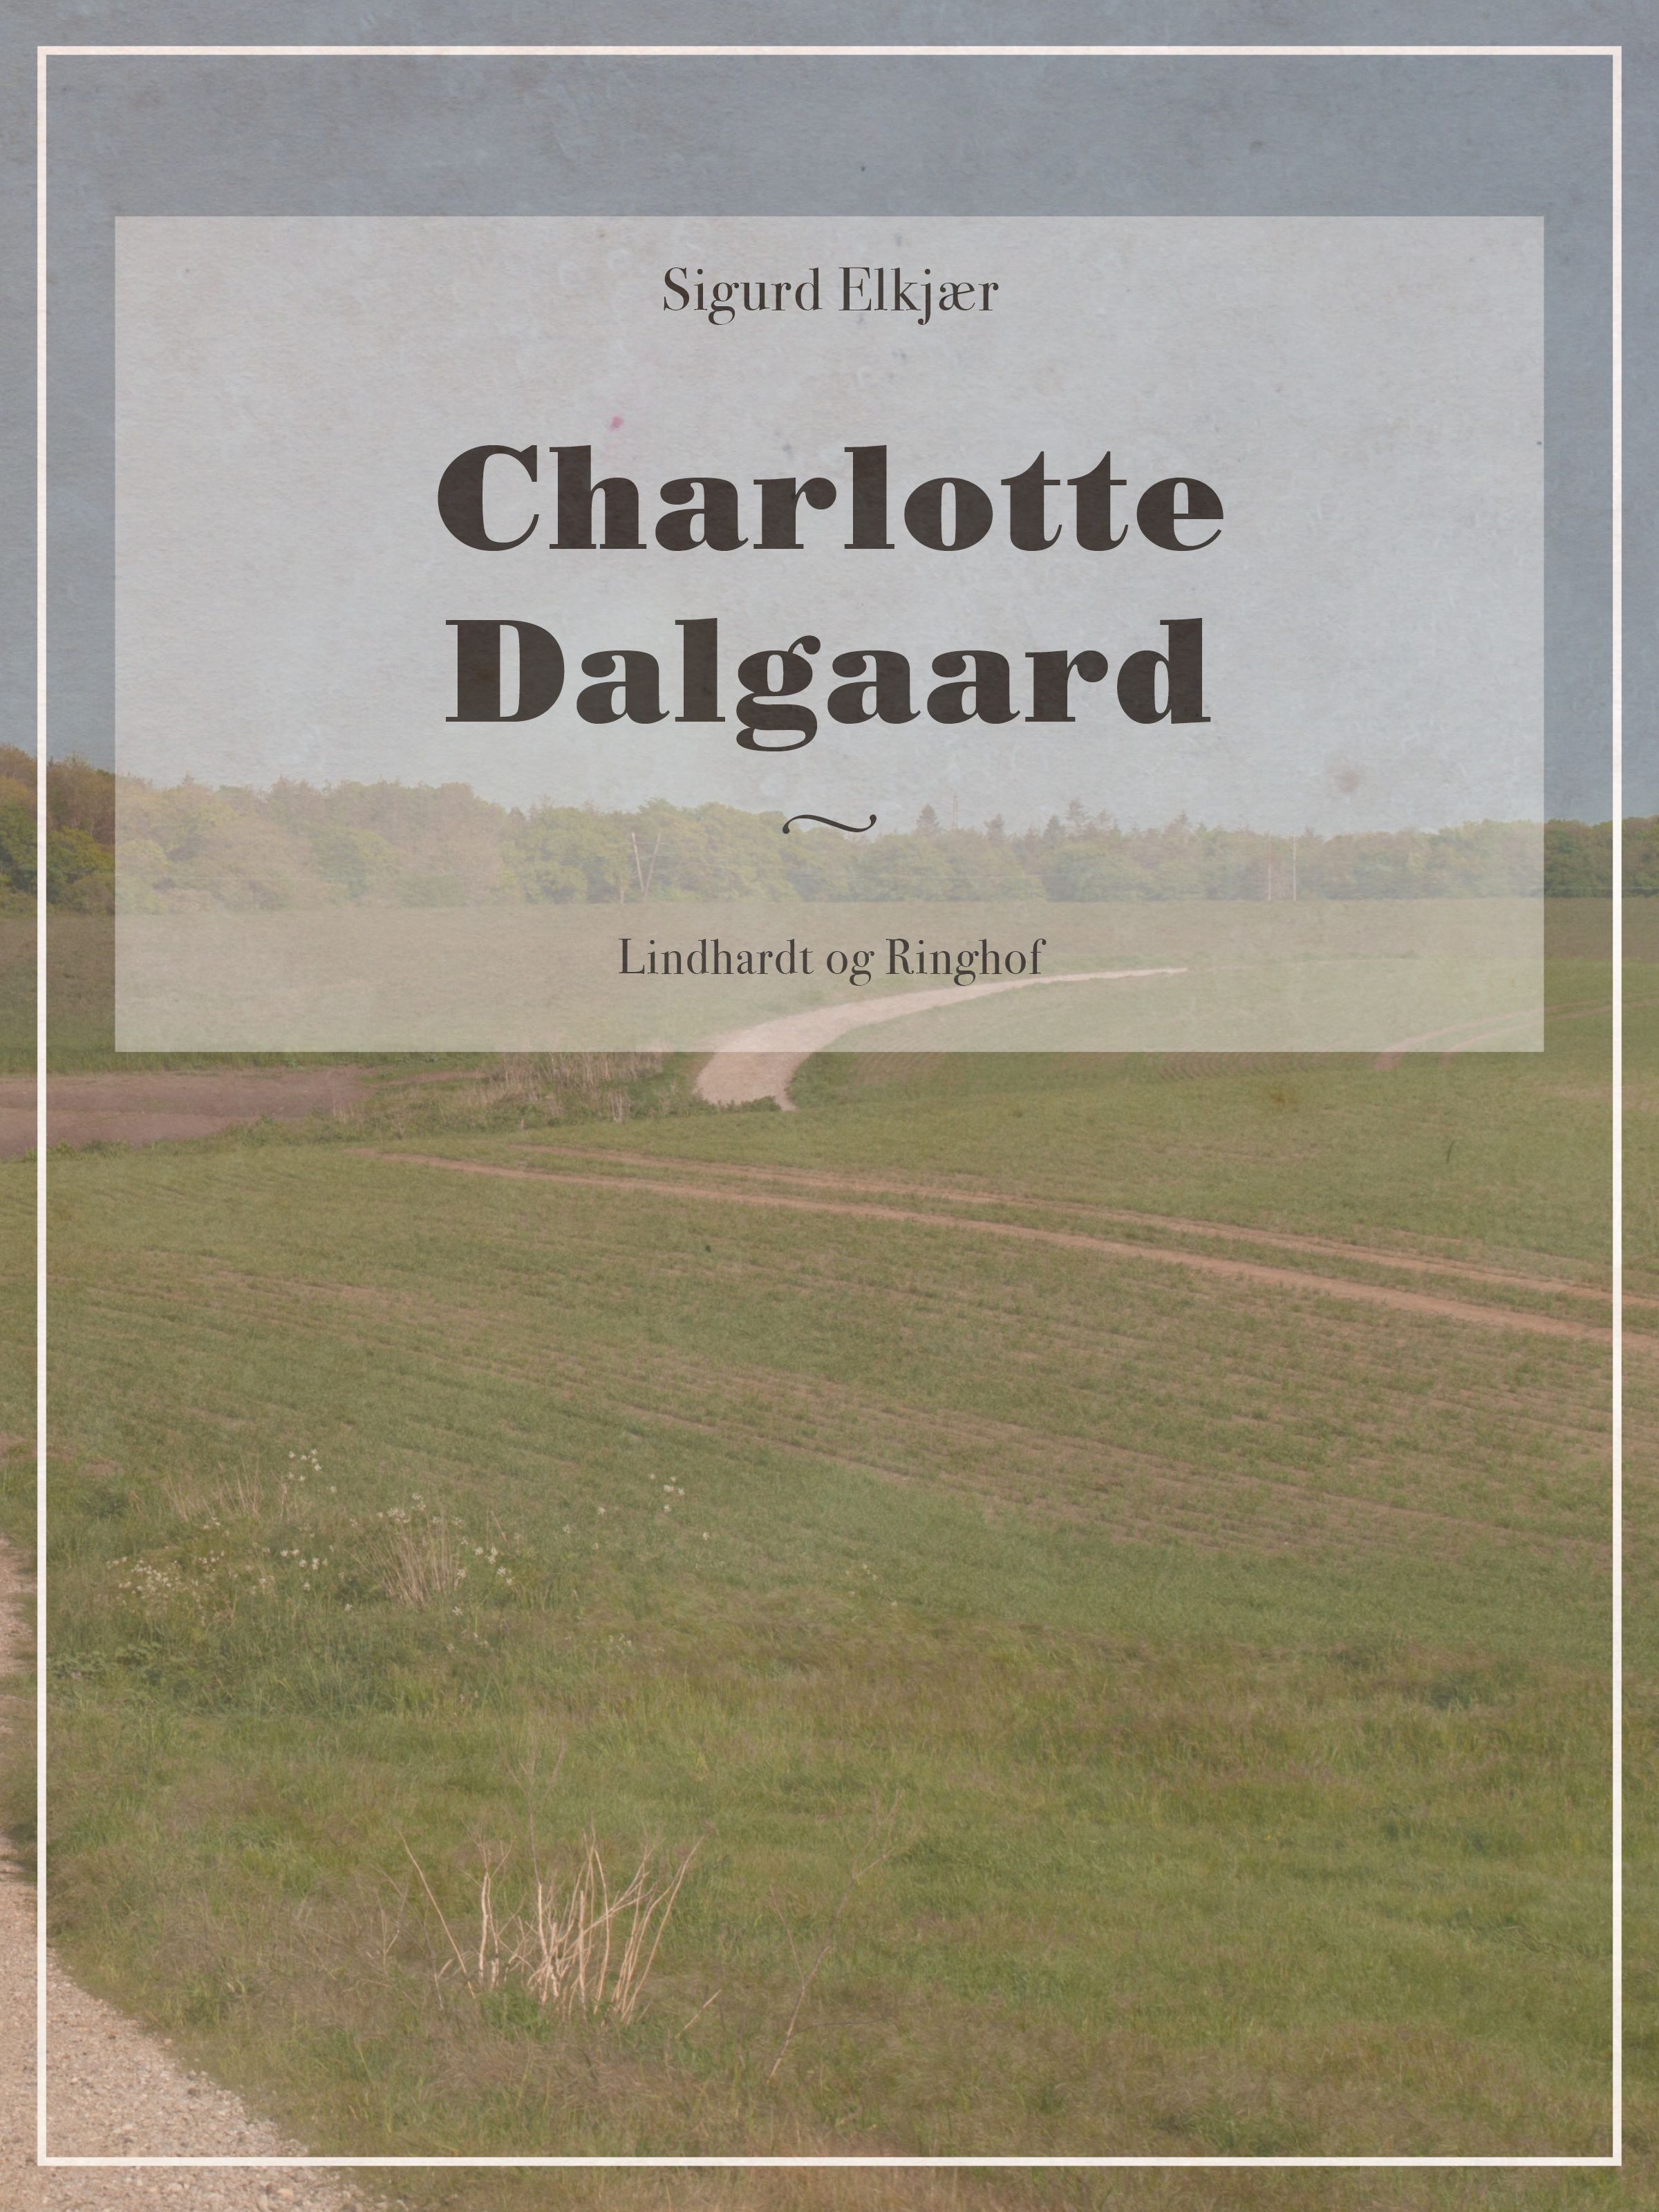 Charlotte Dalgaard, e-bog af Sigurd Elkjær